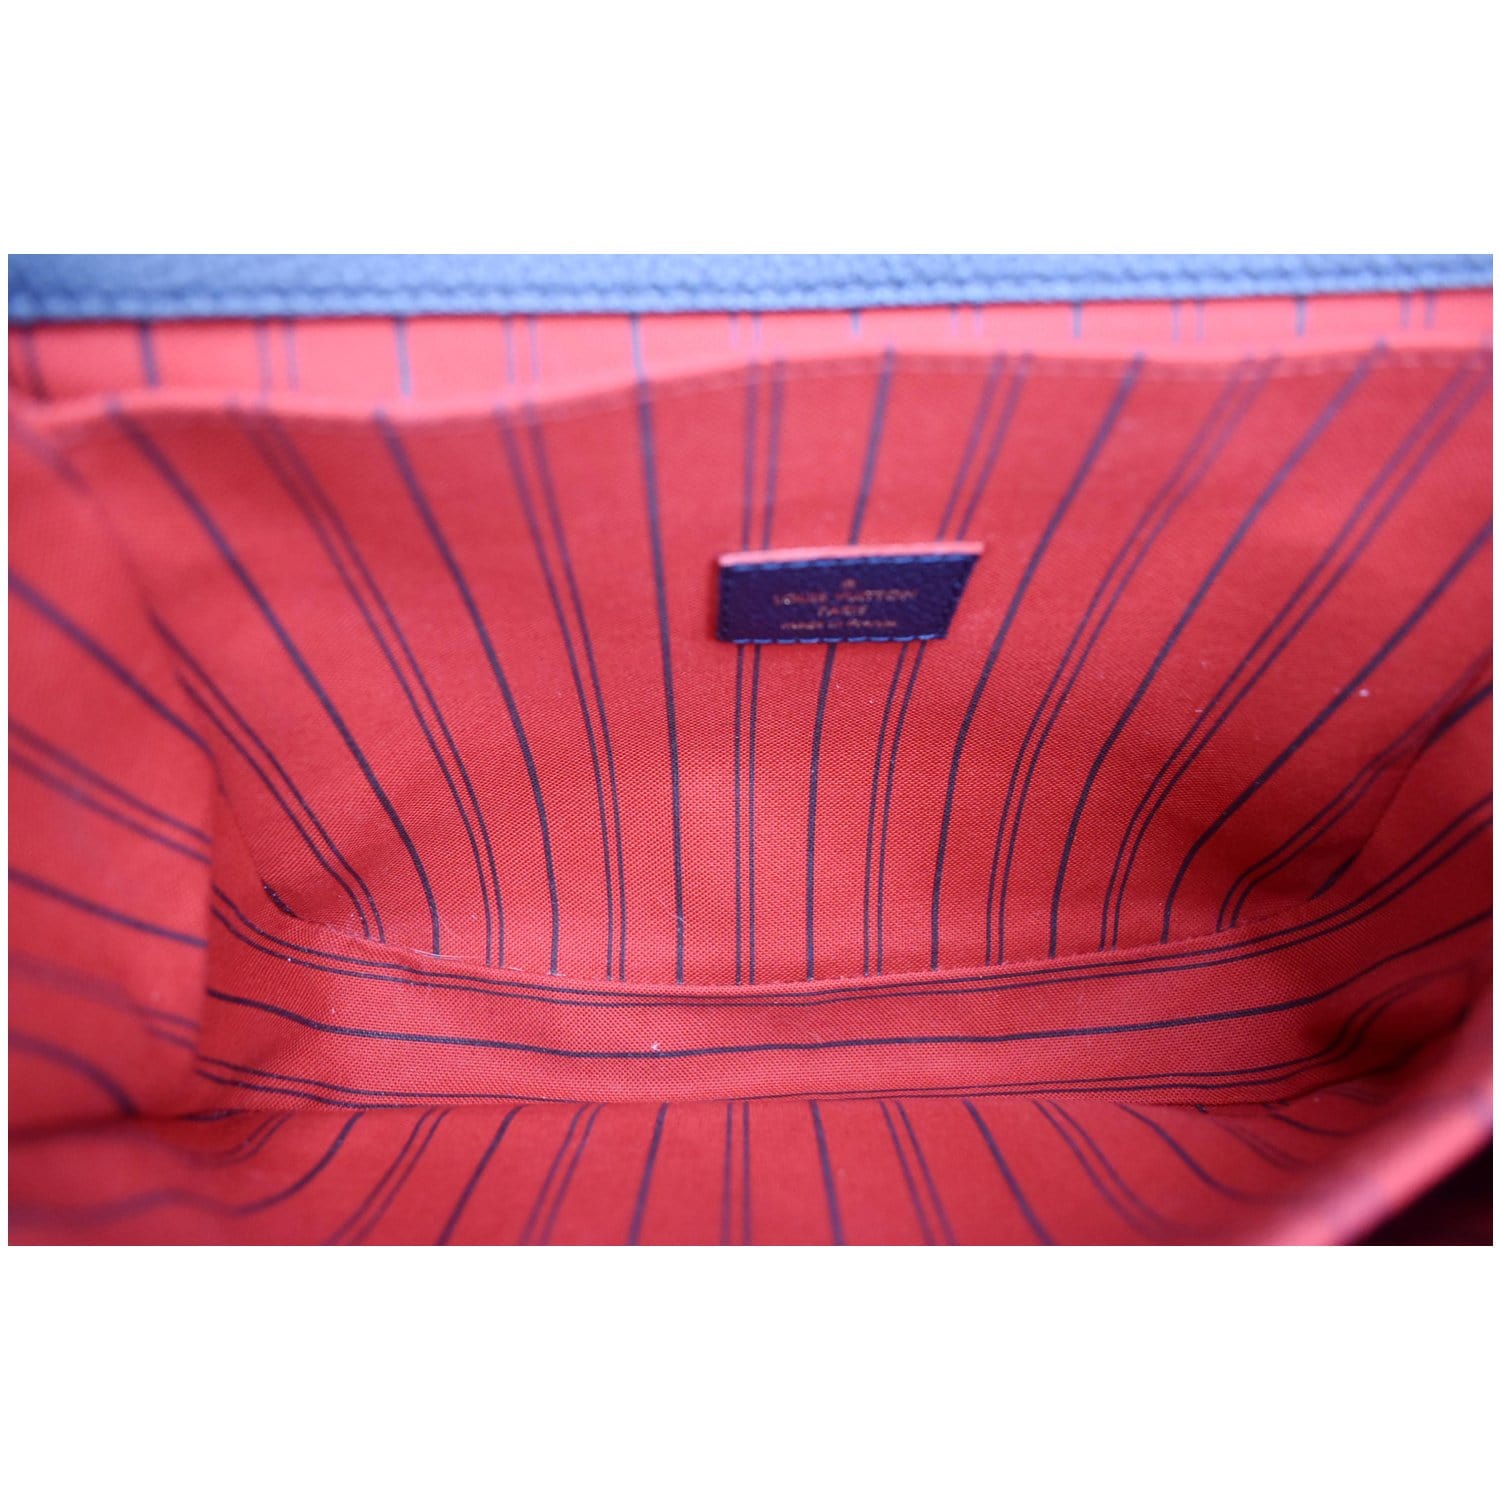 Louis Vuitton Monogram Empreinte Leather NéoNoé MM Navy and Red